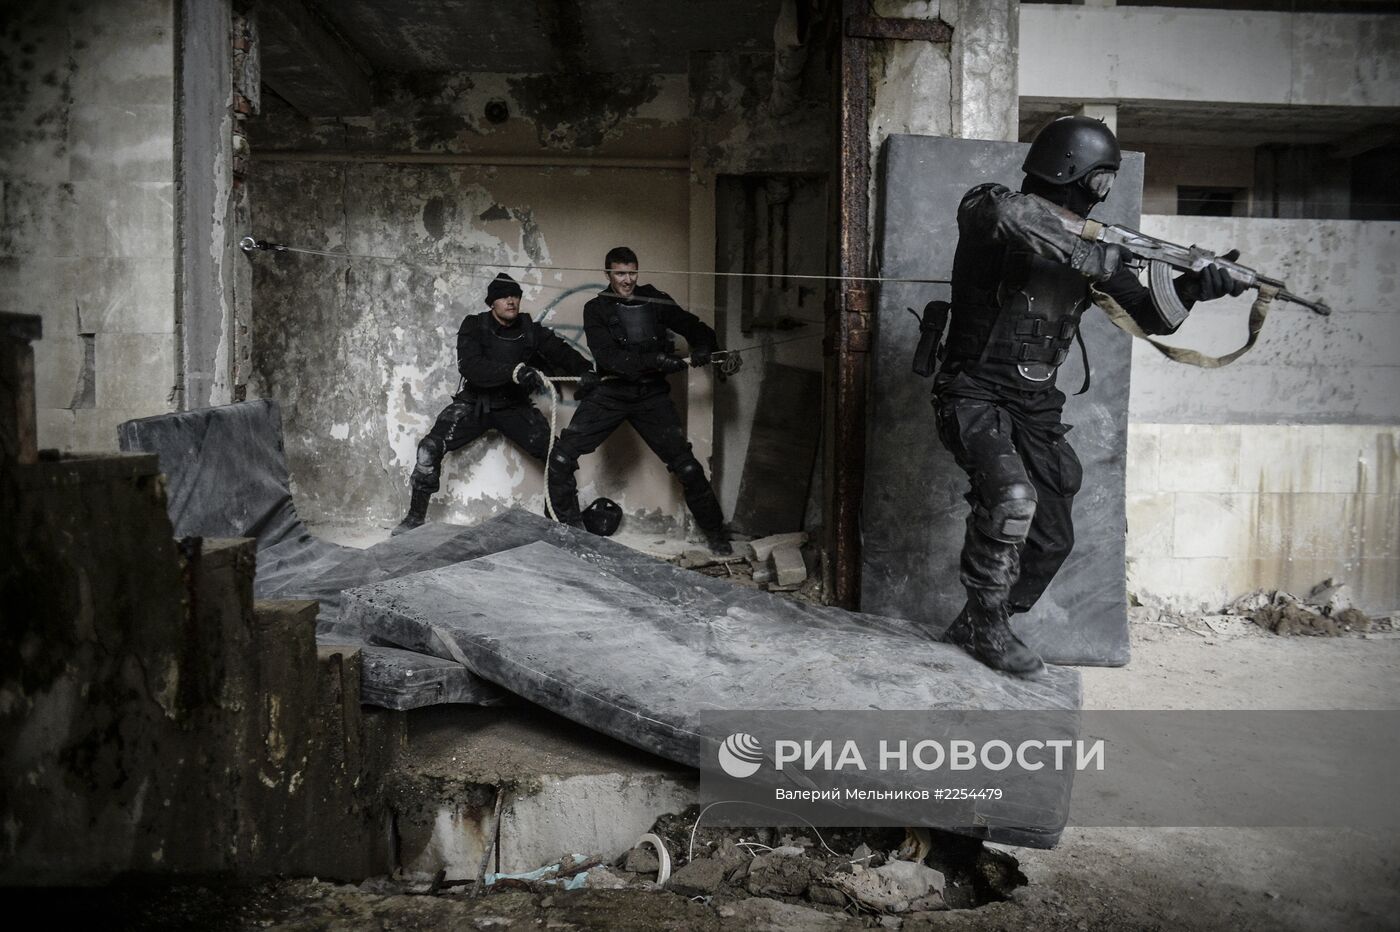 Съемки экспериментального боевика "Хардкор" в Тверской области